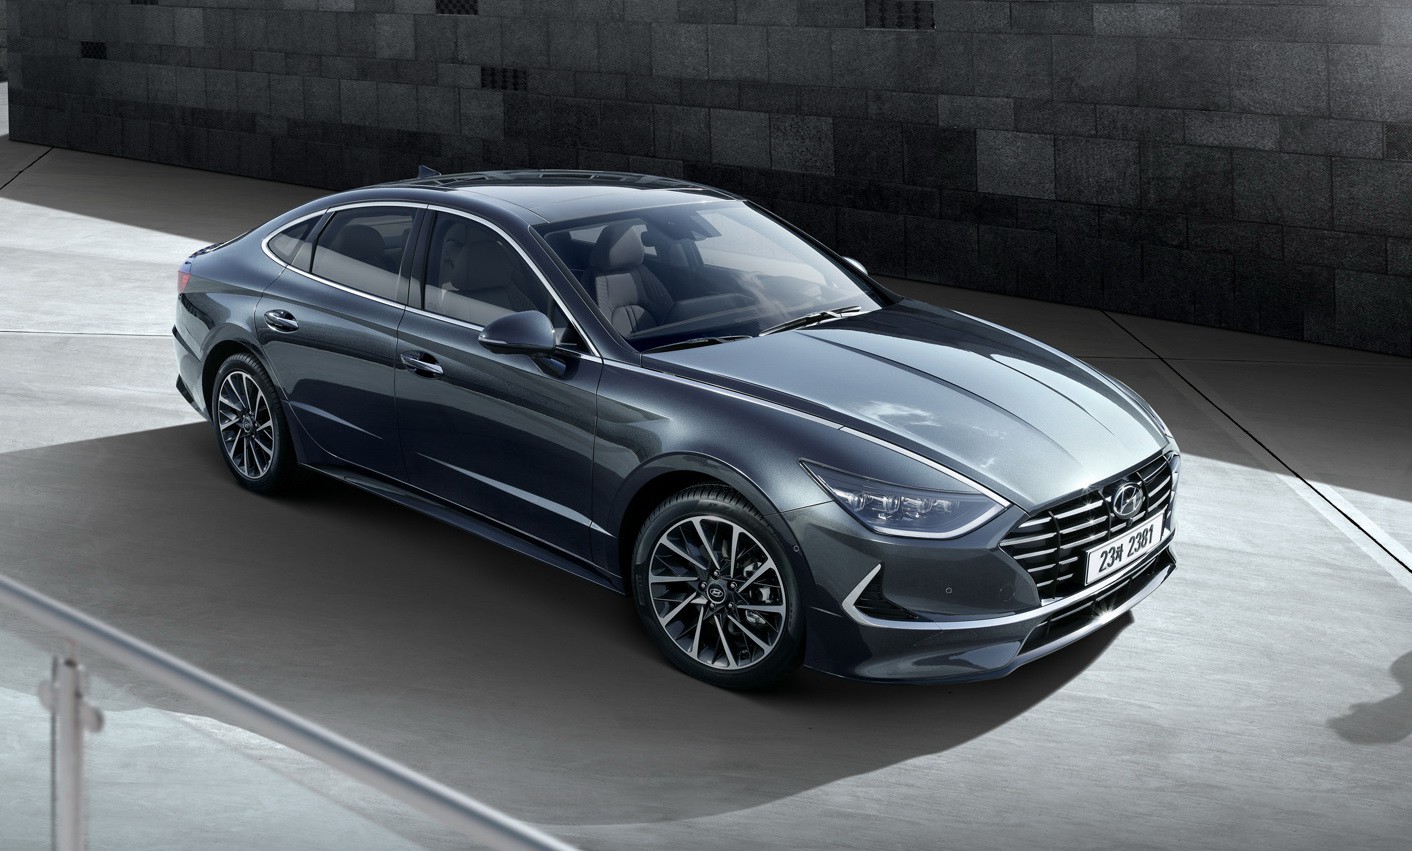 Hyundai Sonata thế hệ mới an toàn hơn với khung gầm thép siêu cường lực